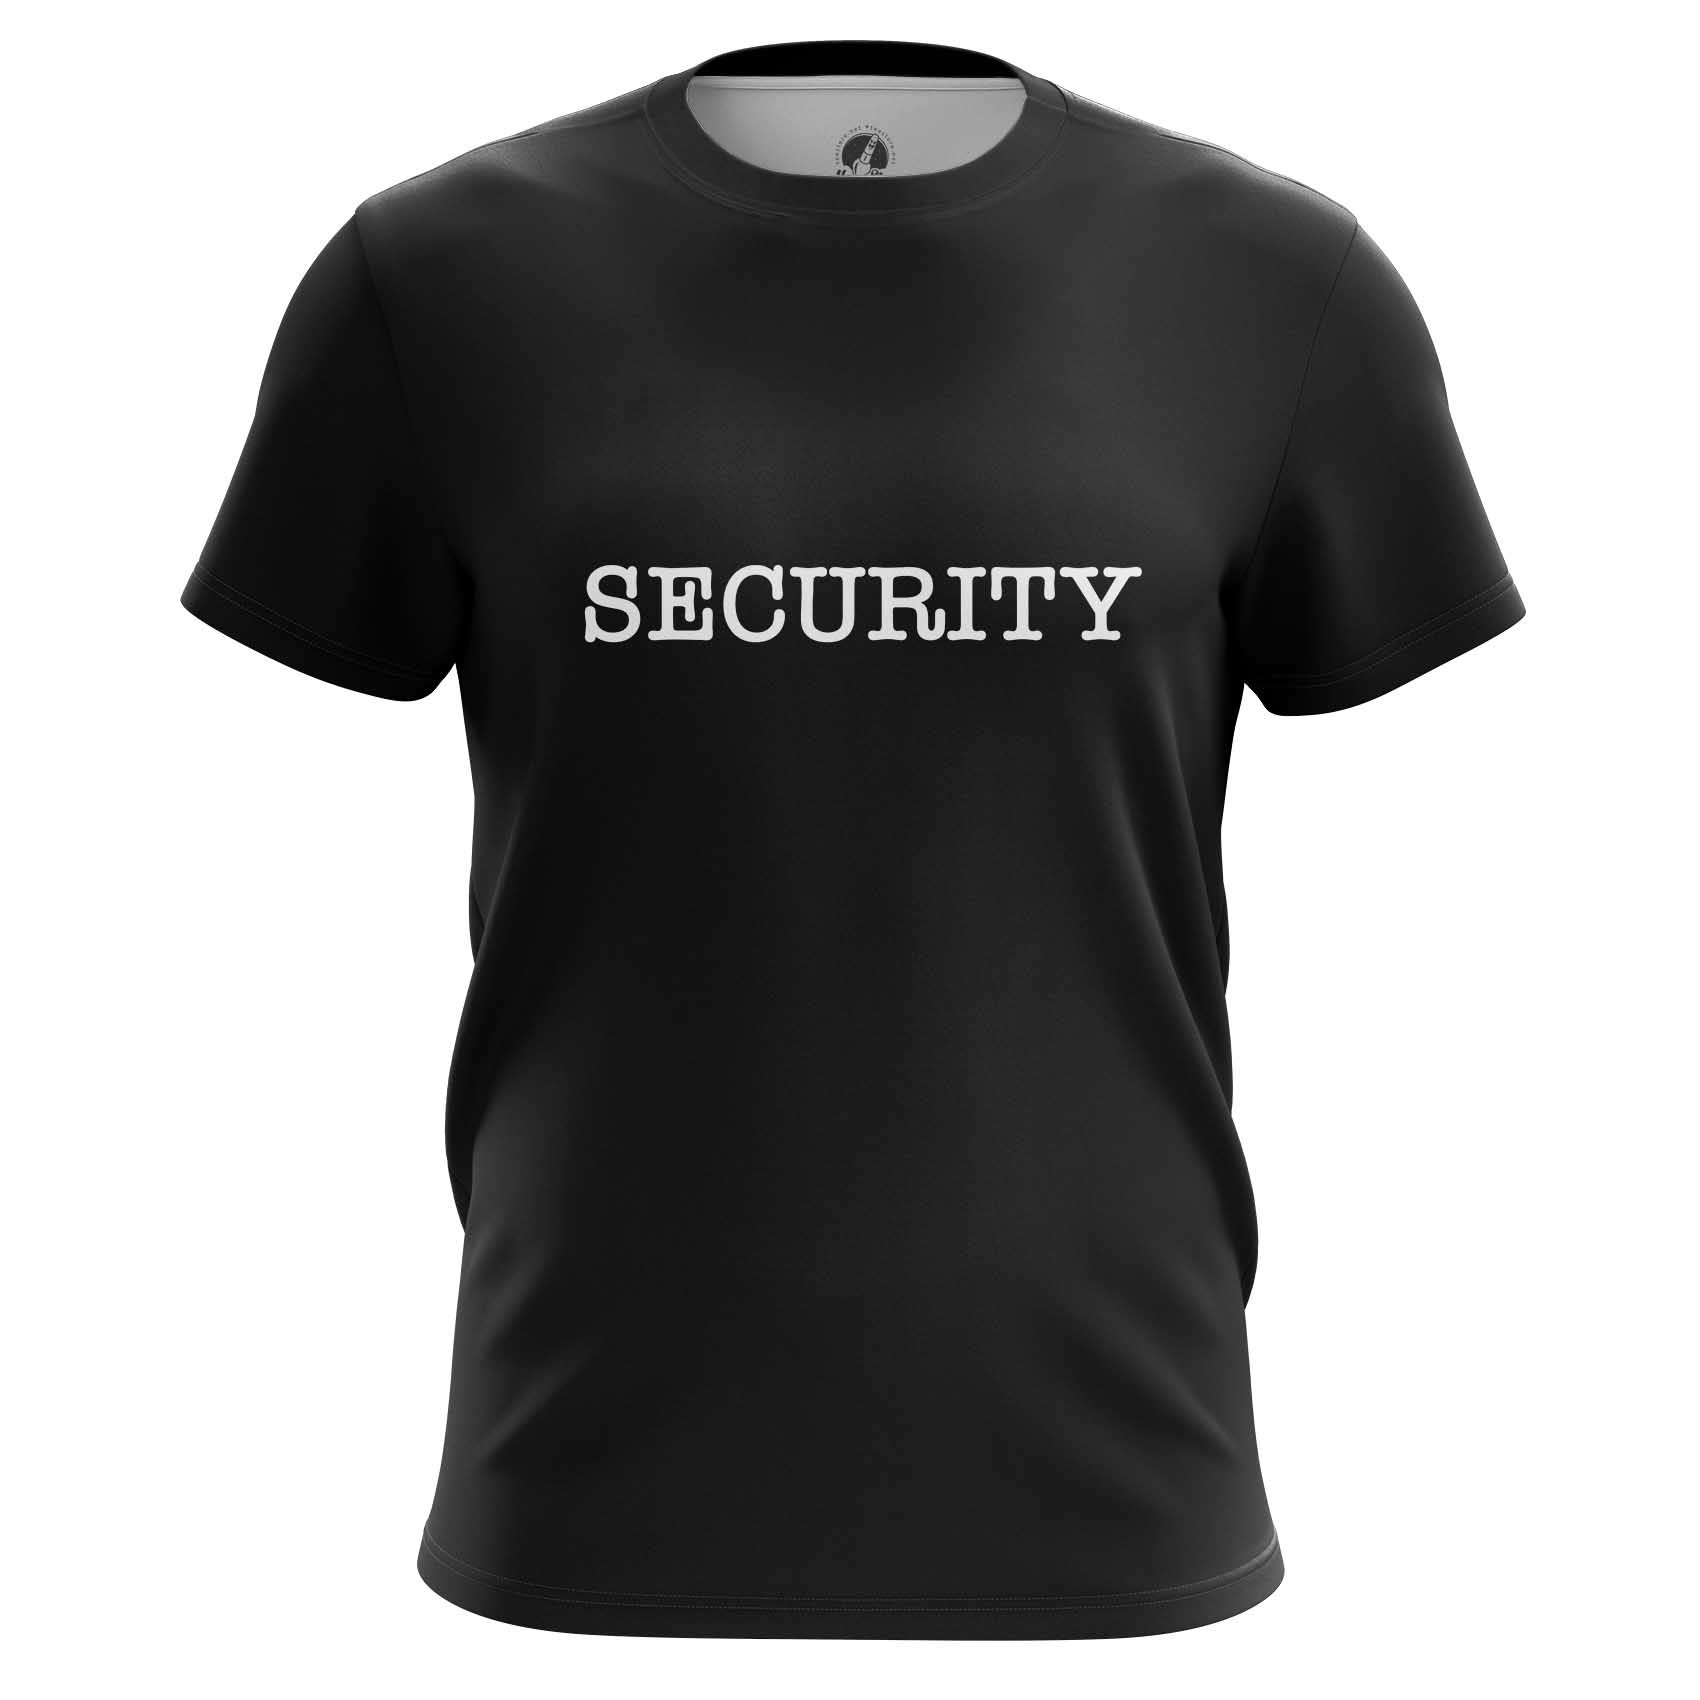 Купить футболку s. Футболка мужская охрана. Черная футболка с надписью. Футболка мужская Security. Футболки мужские с надписями.